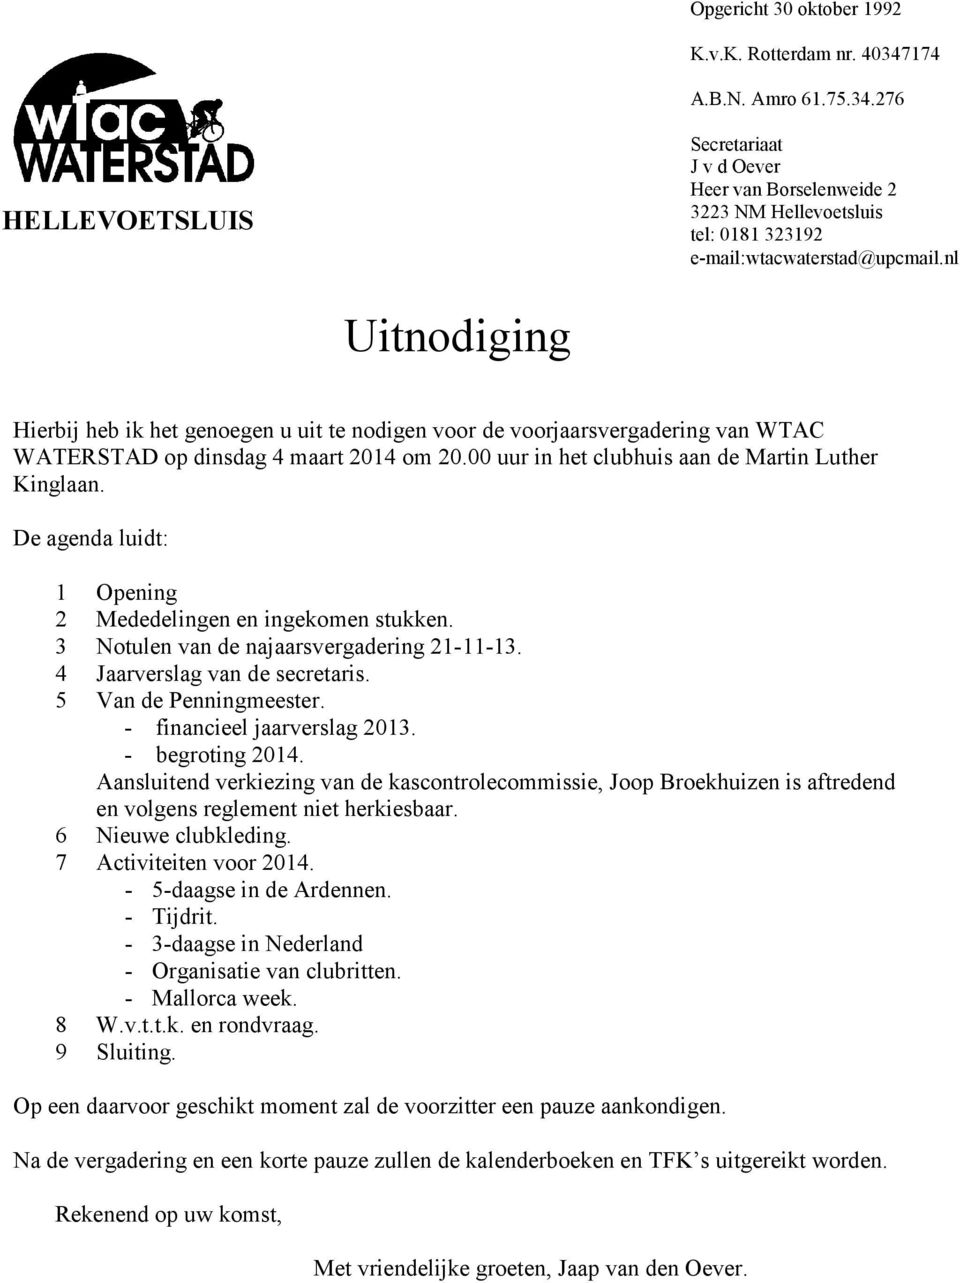 De agenda luidt: 1 Opening 2 Mededelingen en ingekomen stukken. 3 Notulen van de najaarsvergadering 21-11-13. 4 Jaarverslag van de secretaris. 5 Van de Penningmeester. - financieel jaarverslag 2013.